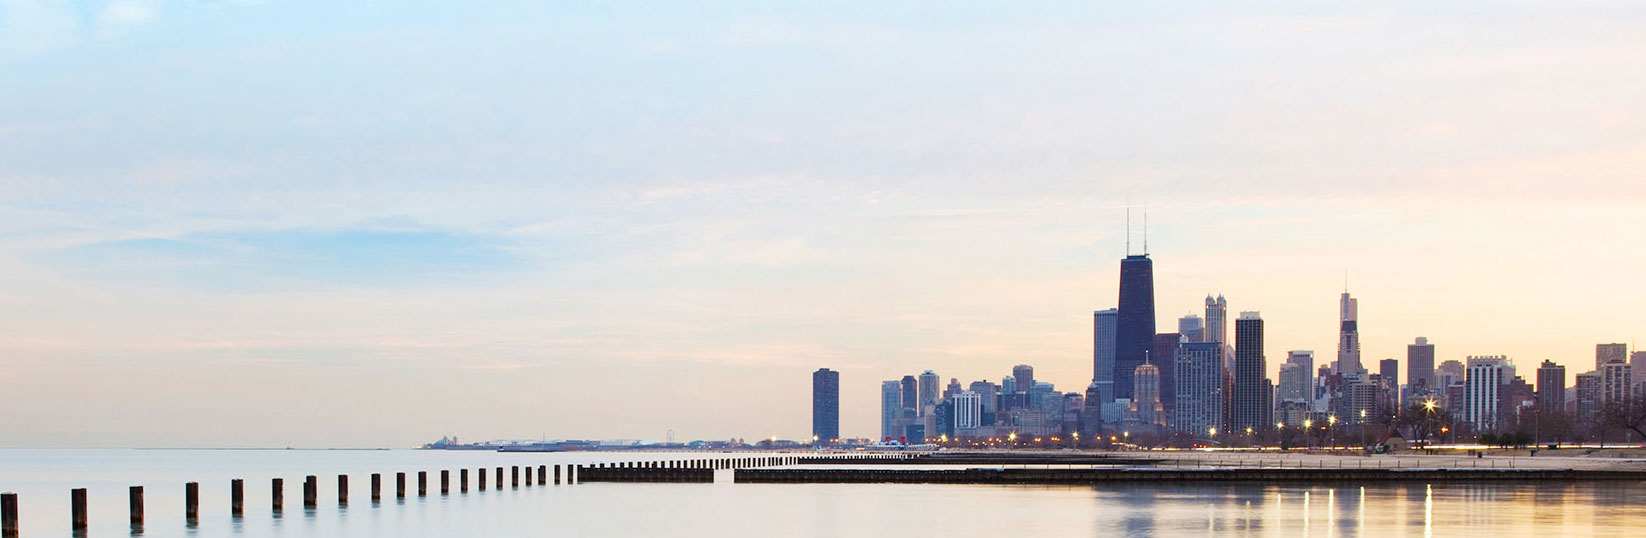 Línea del horizonte de Chicago desde el agua con vista a filas de rascacielos